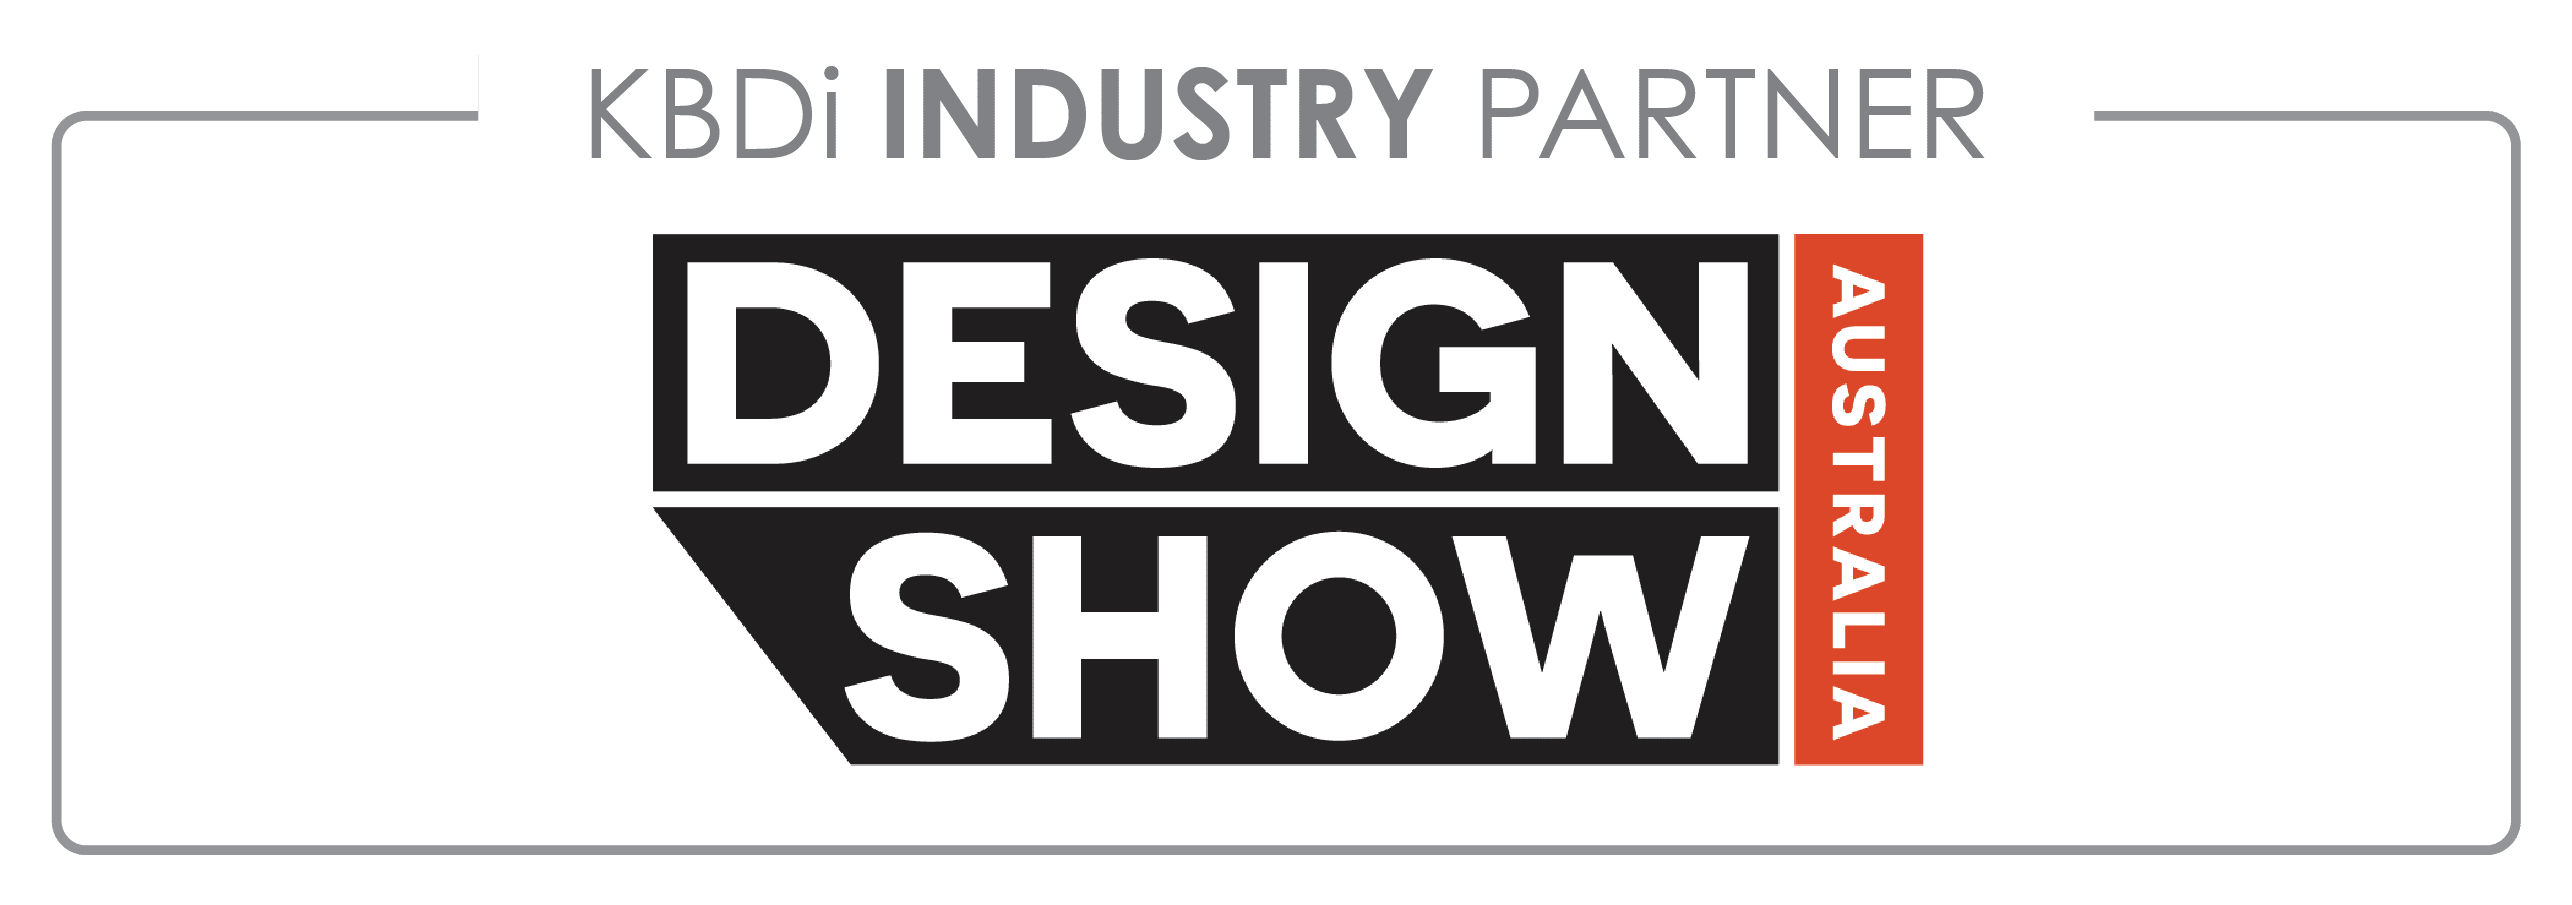 KBDi Industry Partner Design Show Australia